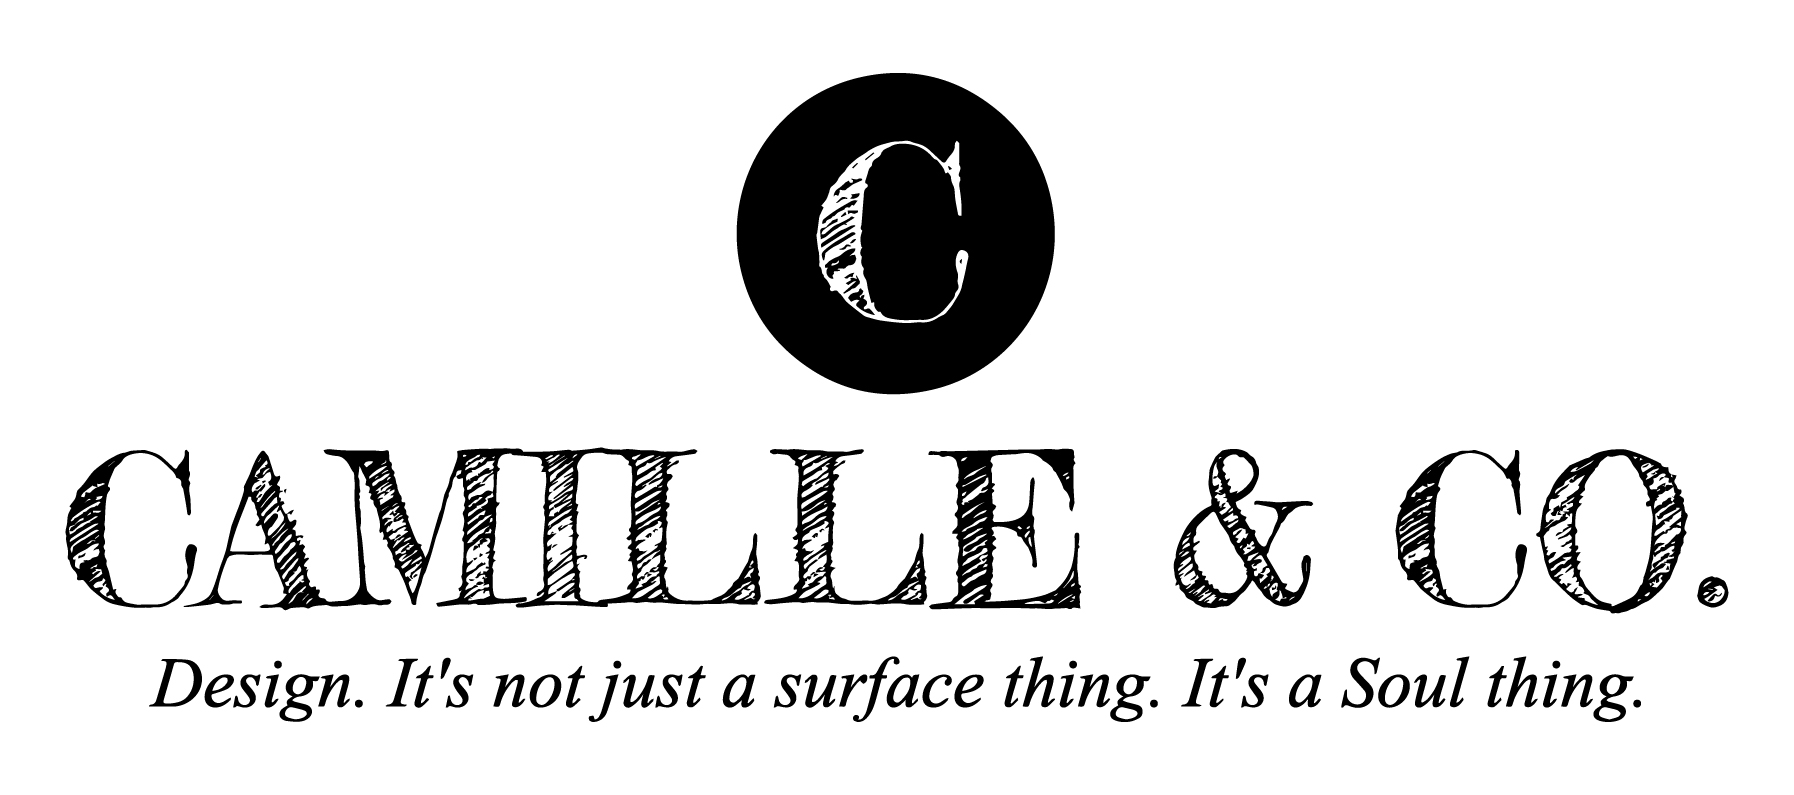 Camille & Co. Logo